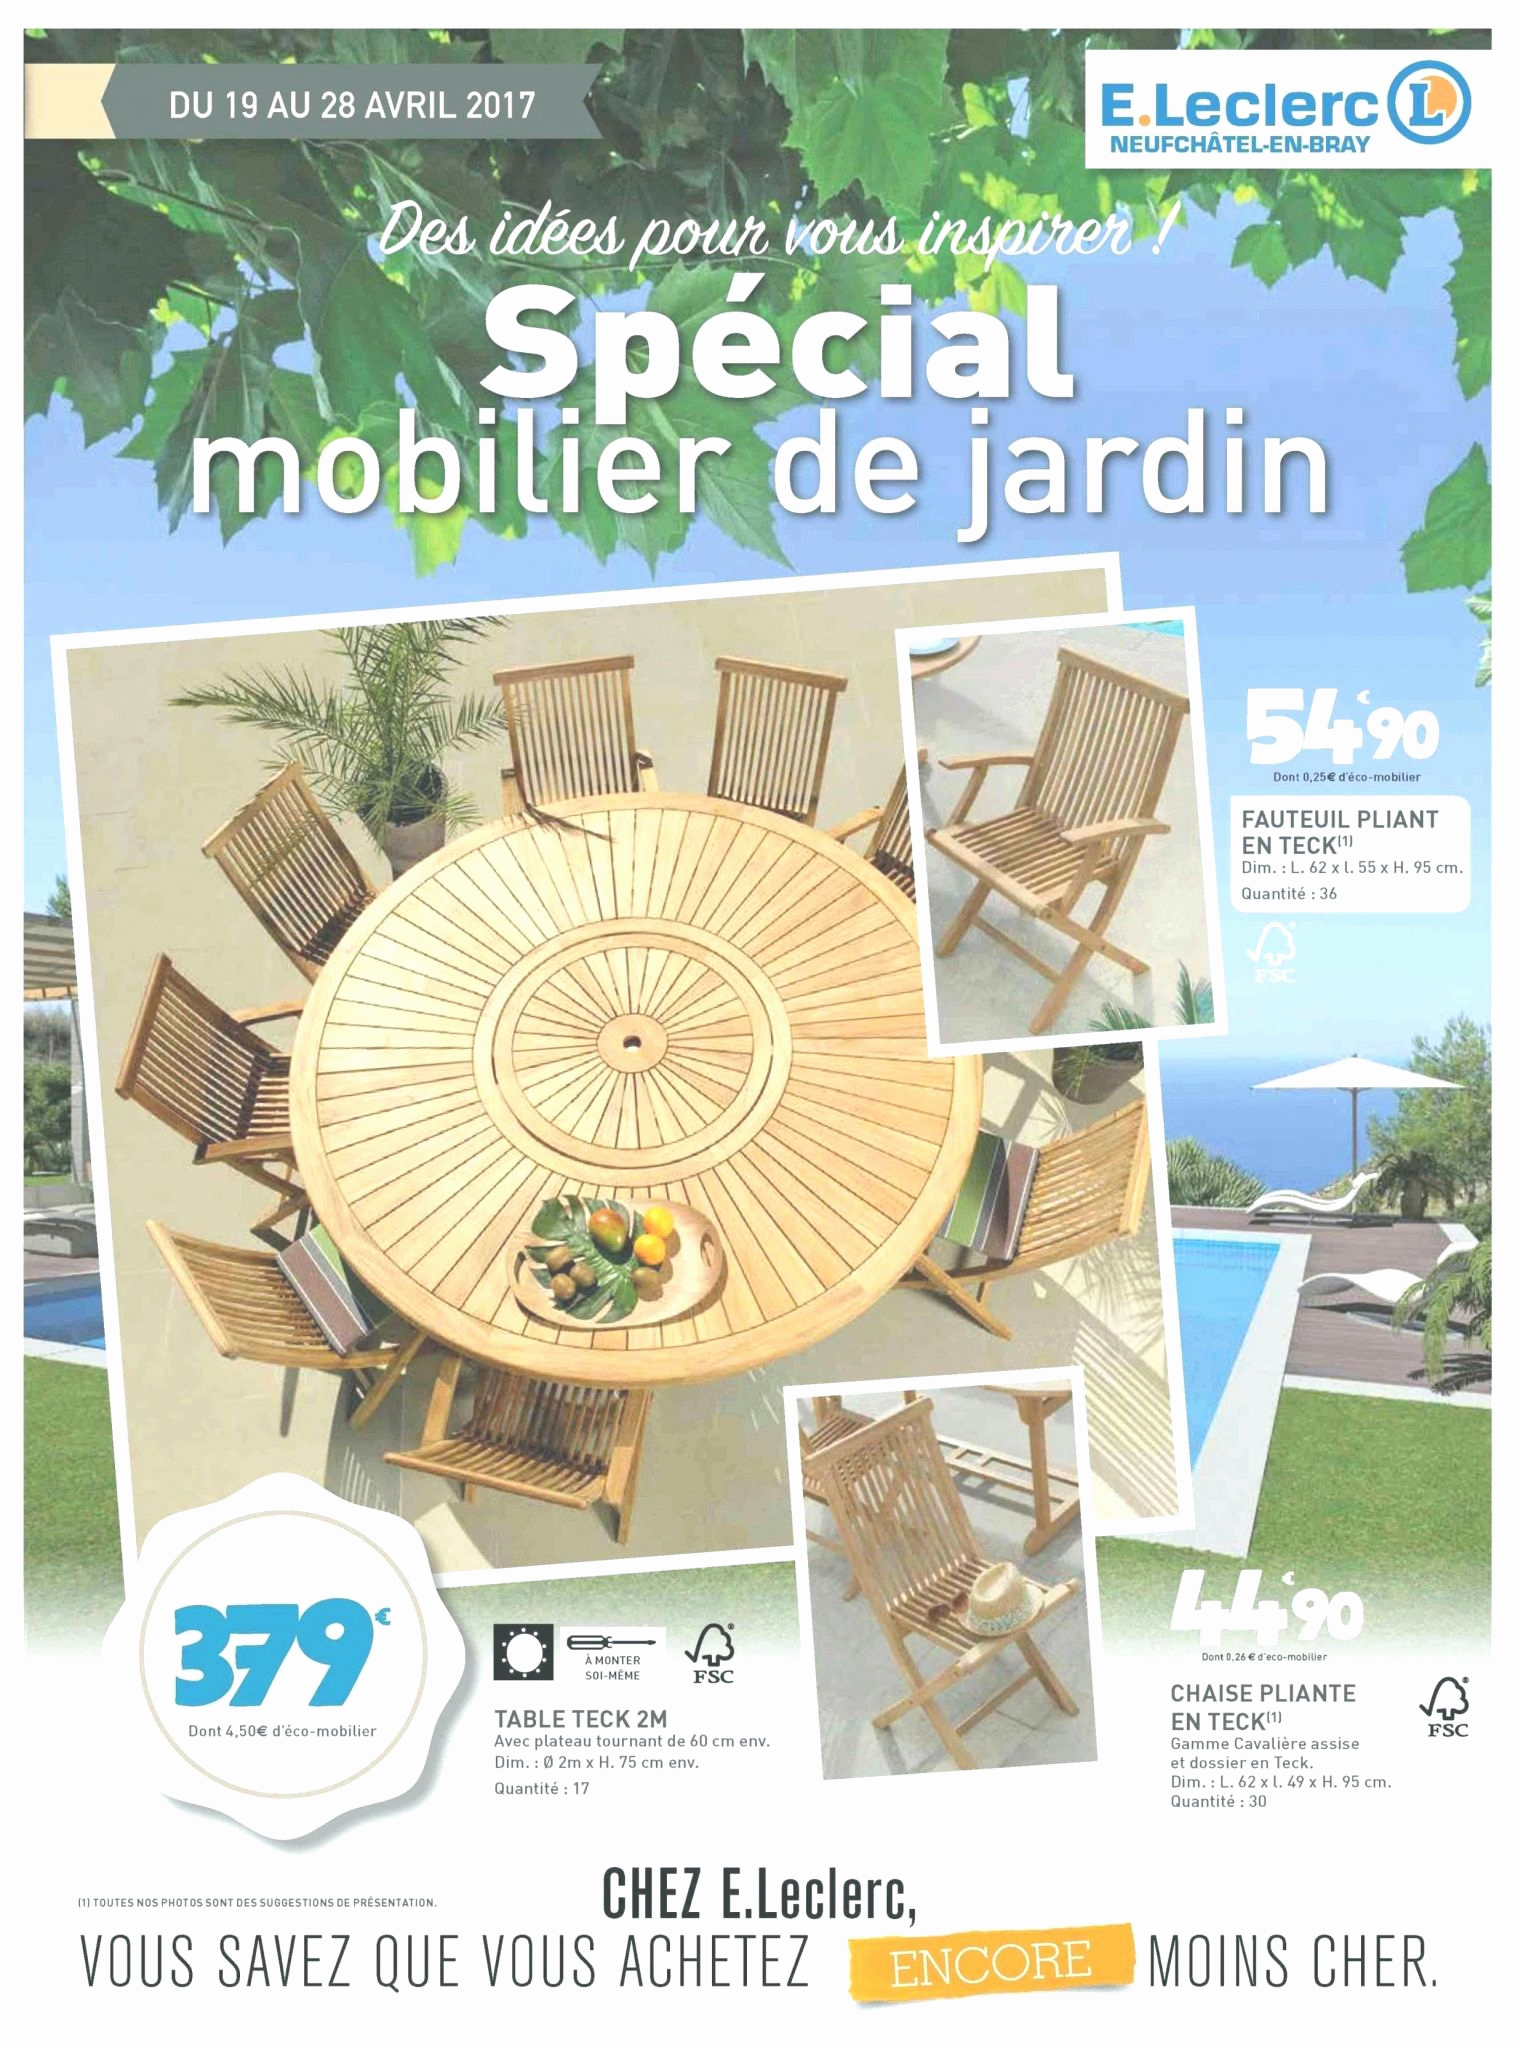 Salon Bas De Jardin Pas Cher Best Of Salon De Jardin Leclerc Catalogue 2017 Le Meilleur De Table